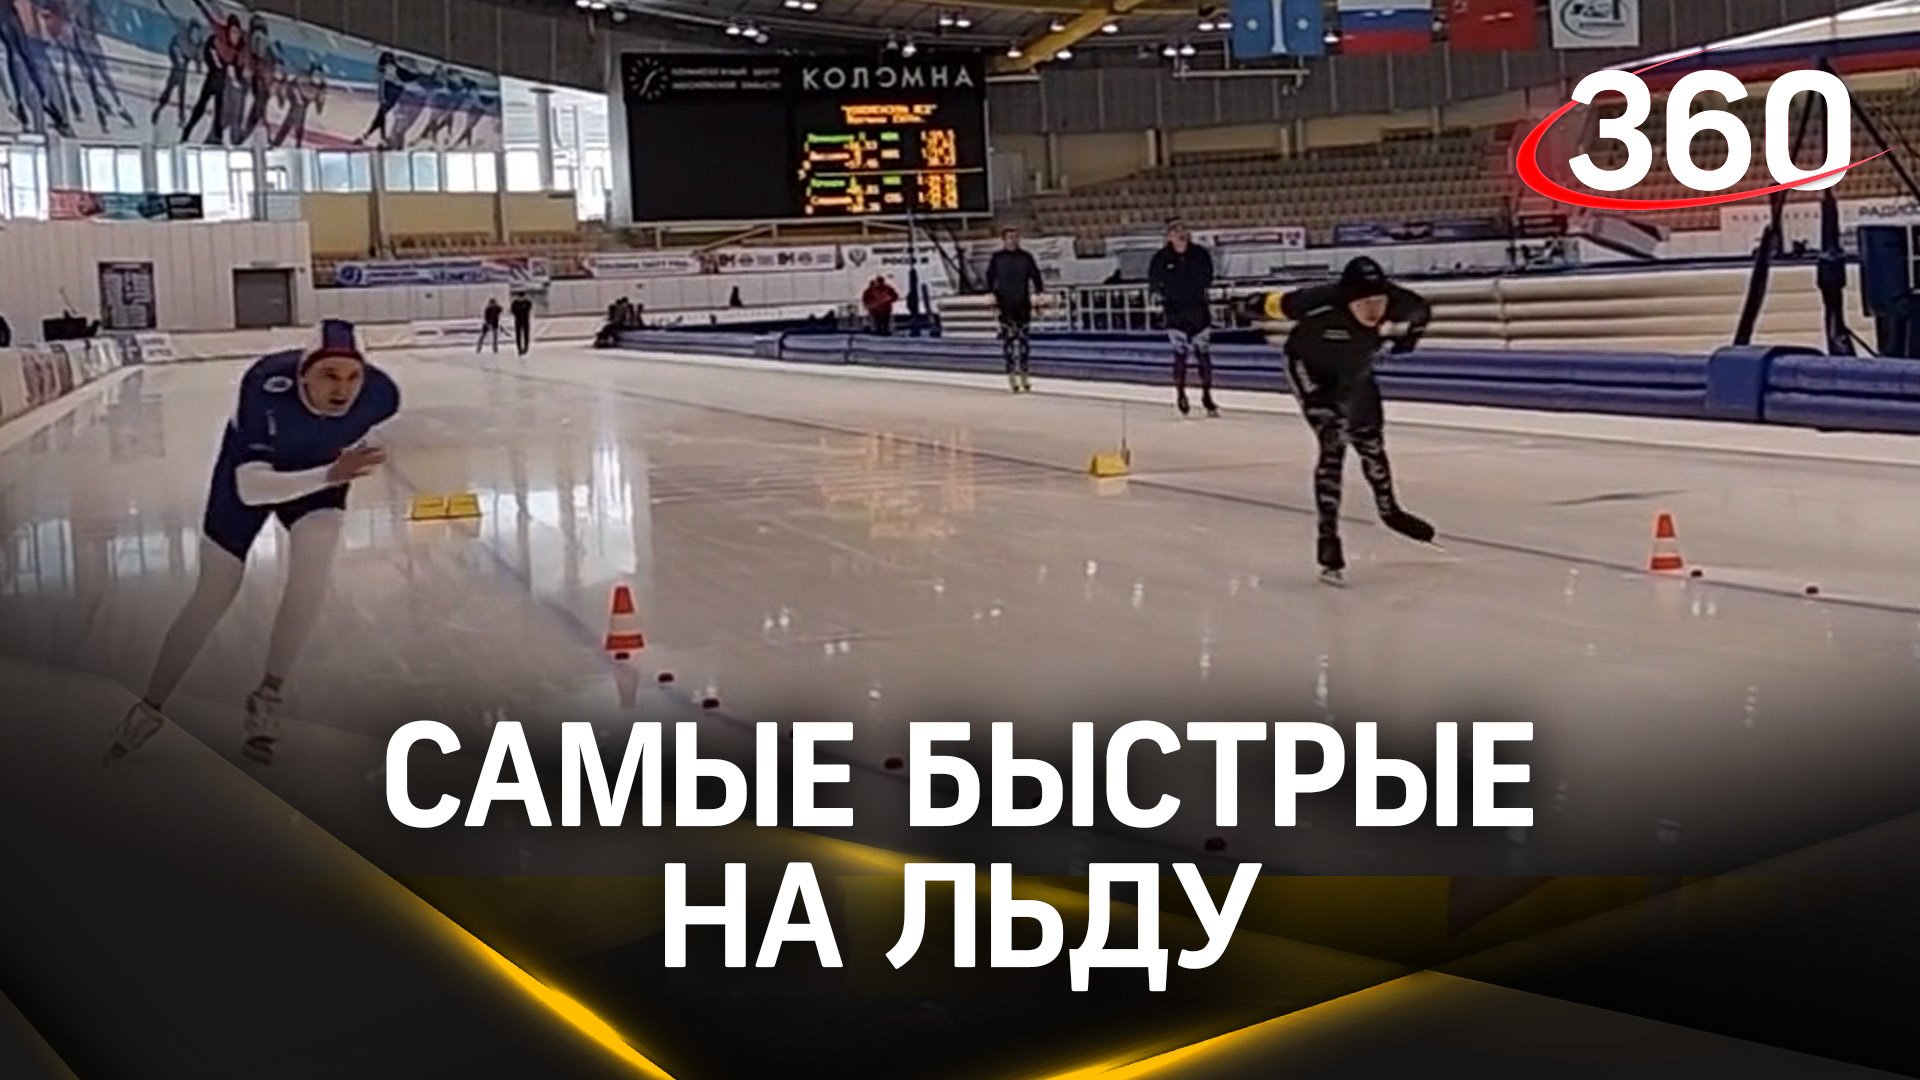 В Коломне прошли Всероссийские соревнования по конькобежному спорту